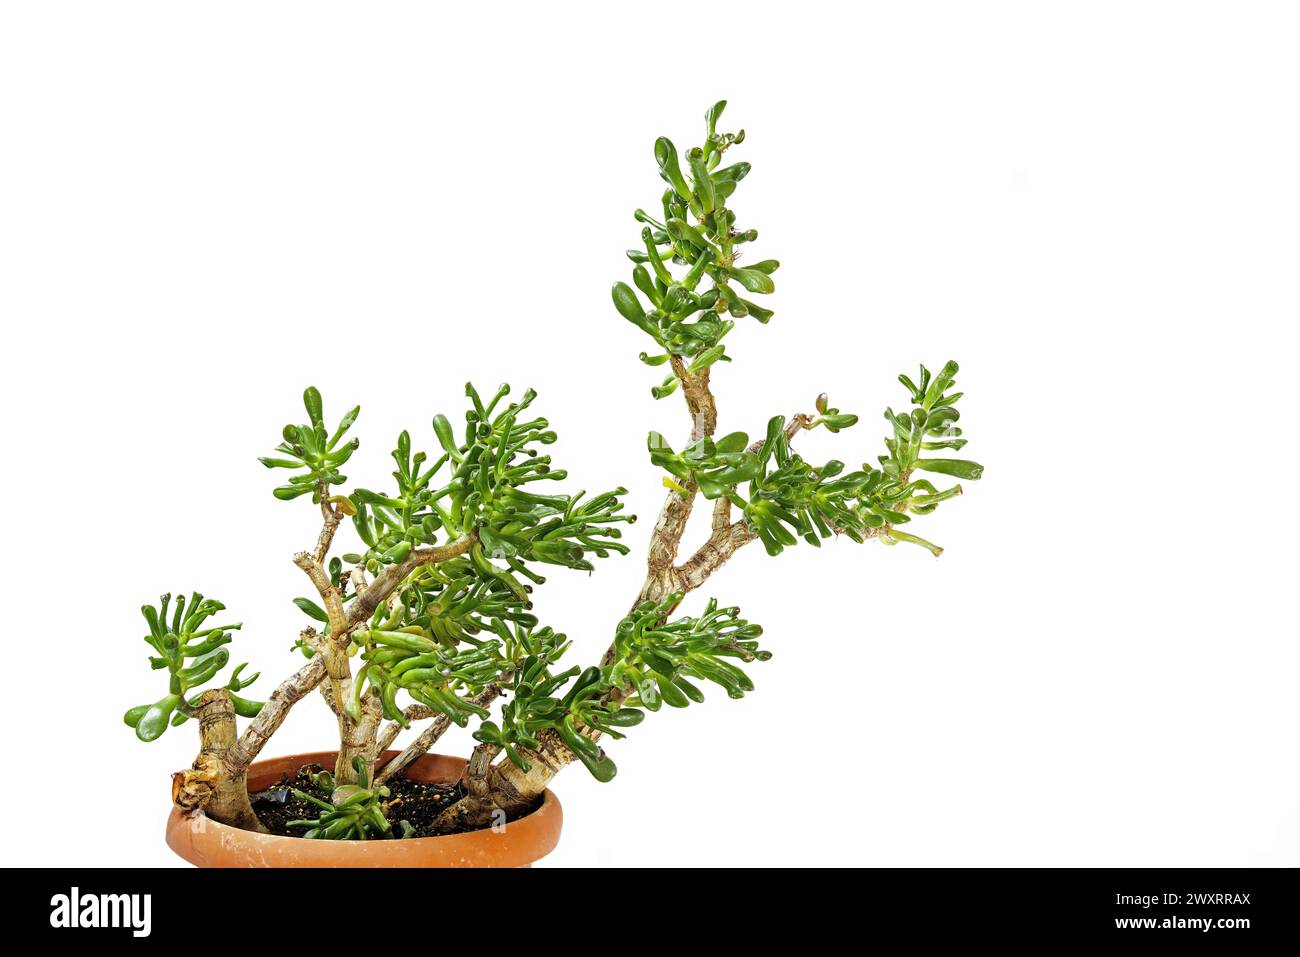 jade plant, lucky plant, money plant or money tree, Crassula ovata gollum Crassula Ovata, an original succulent plant for your home, Shrek ears, eleph Stock Photo